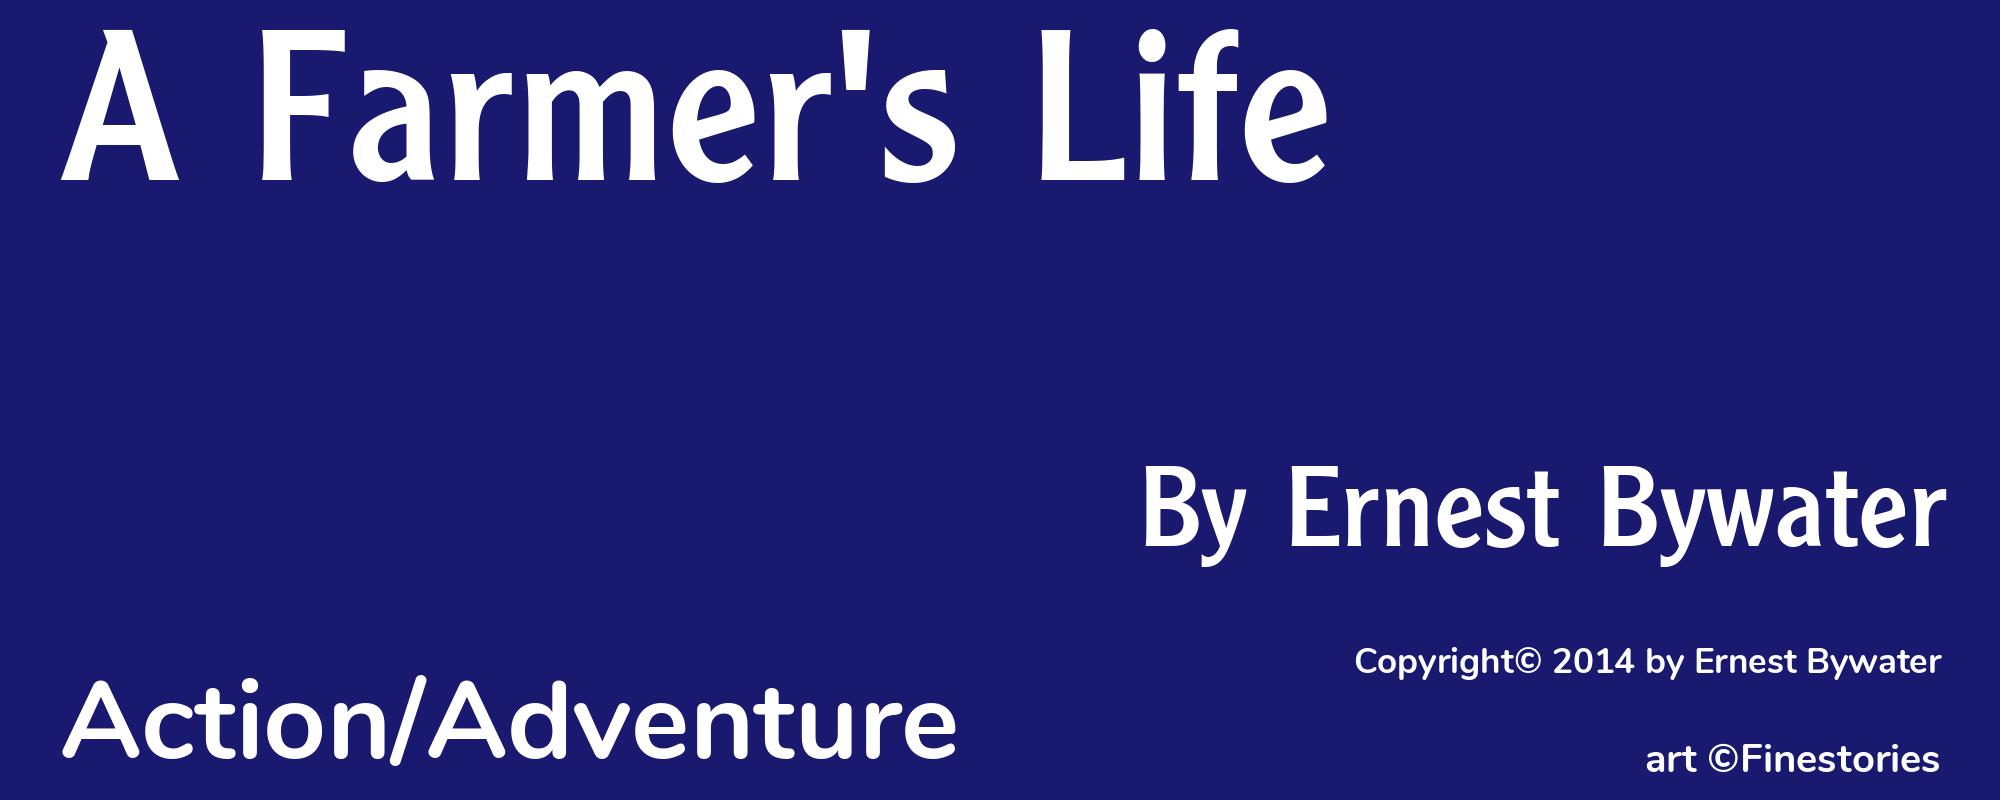 A Farmer's Life - Cover